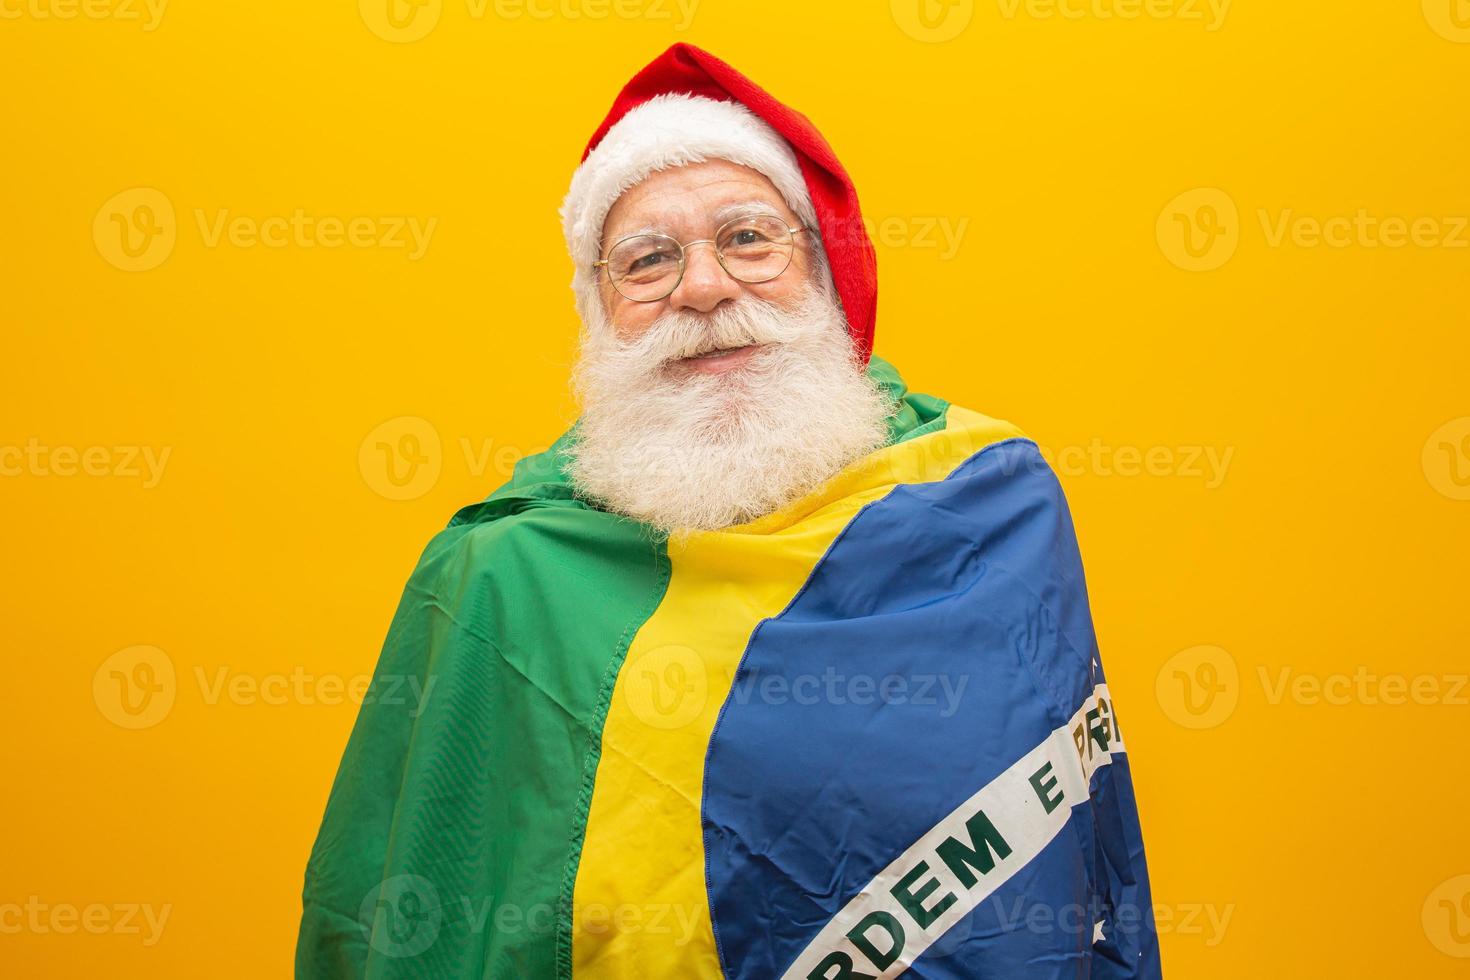 der weihnachtsmann ist ein fan von brasilien. Weihnachtsmann-Anhänger des brasilianischen Teams. sportliche Meisterschaft. weihnachtsmann, der die brasilianische flagge hält. Fußballspiel. foto